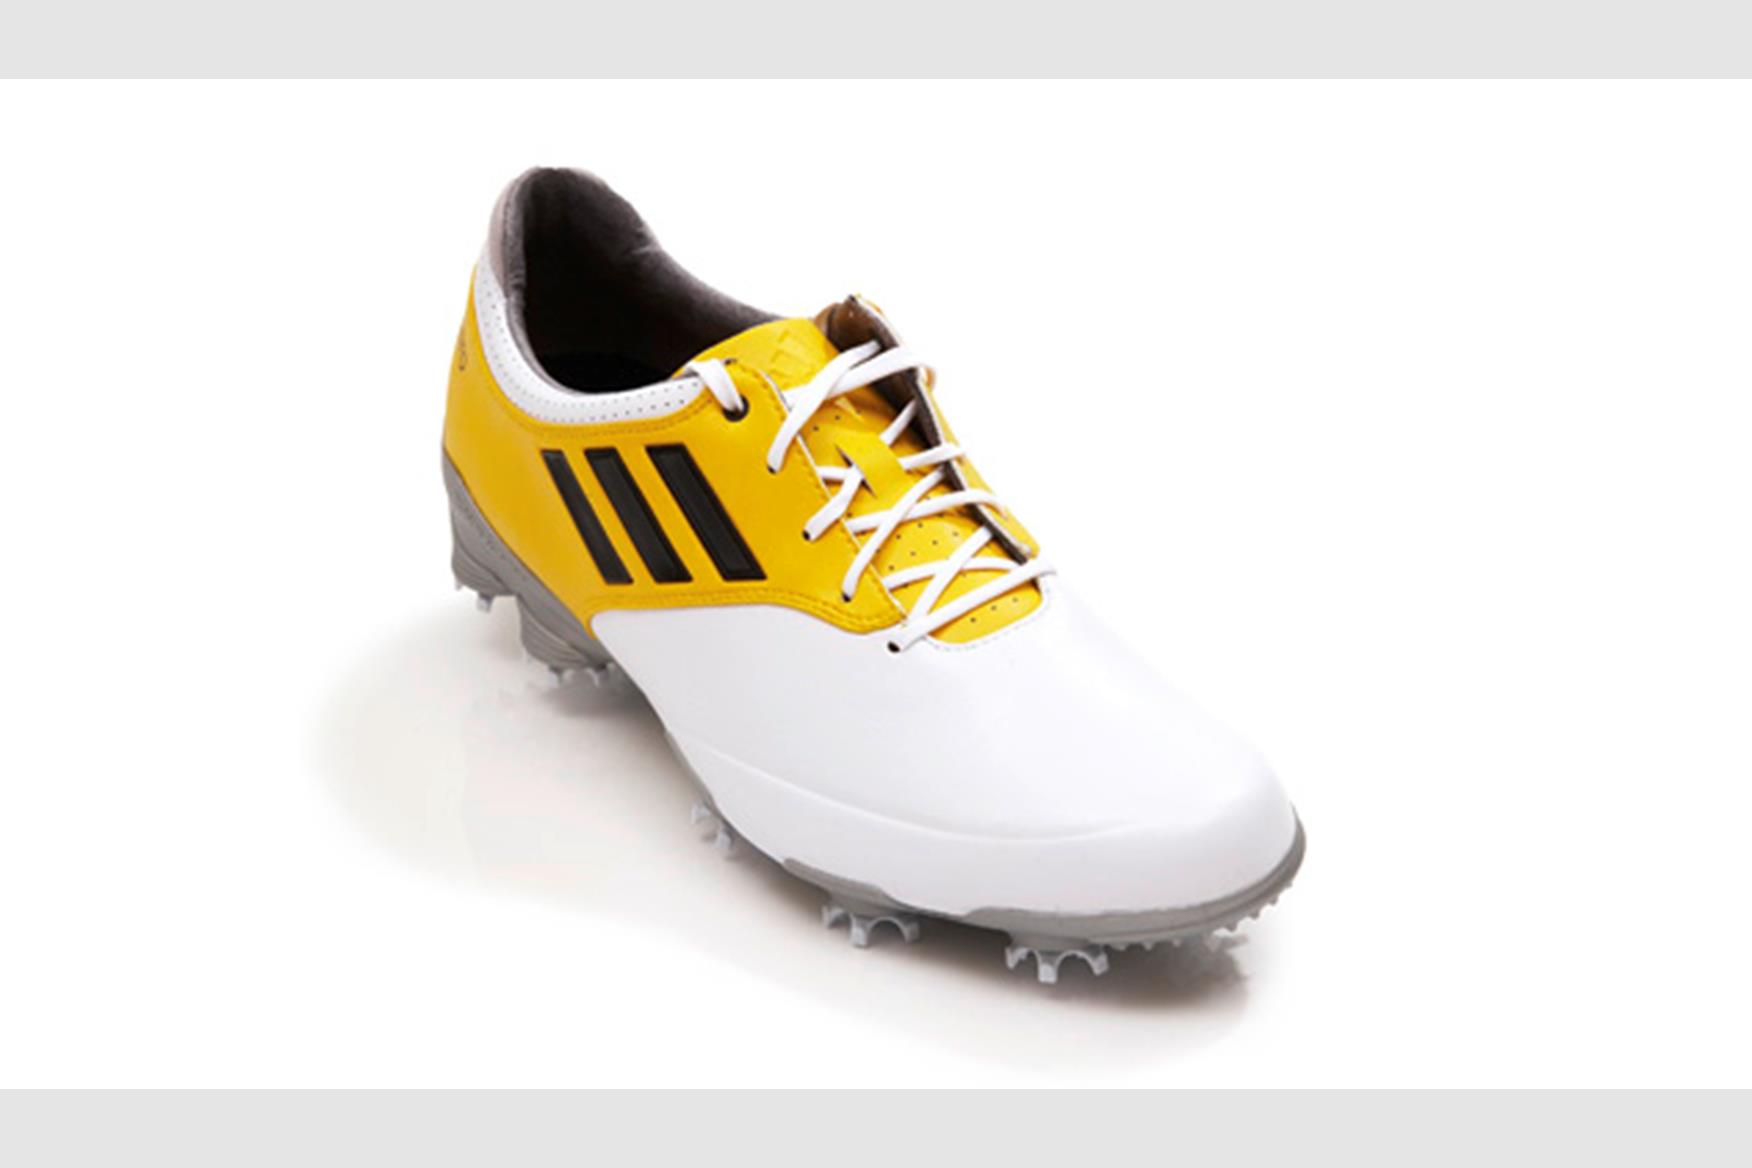 Takt Landsdækkende Stå på ski adidas adizero Golf Shoes Review | Equipment Reviews | Today's Golfer